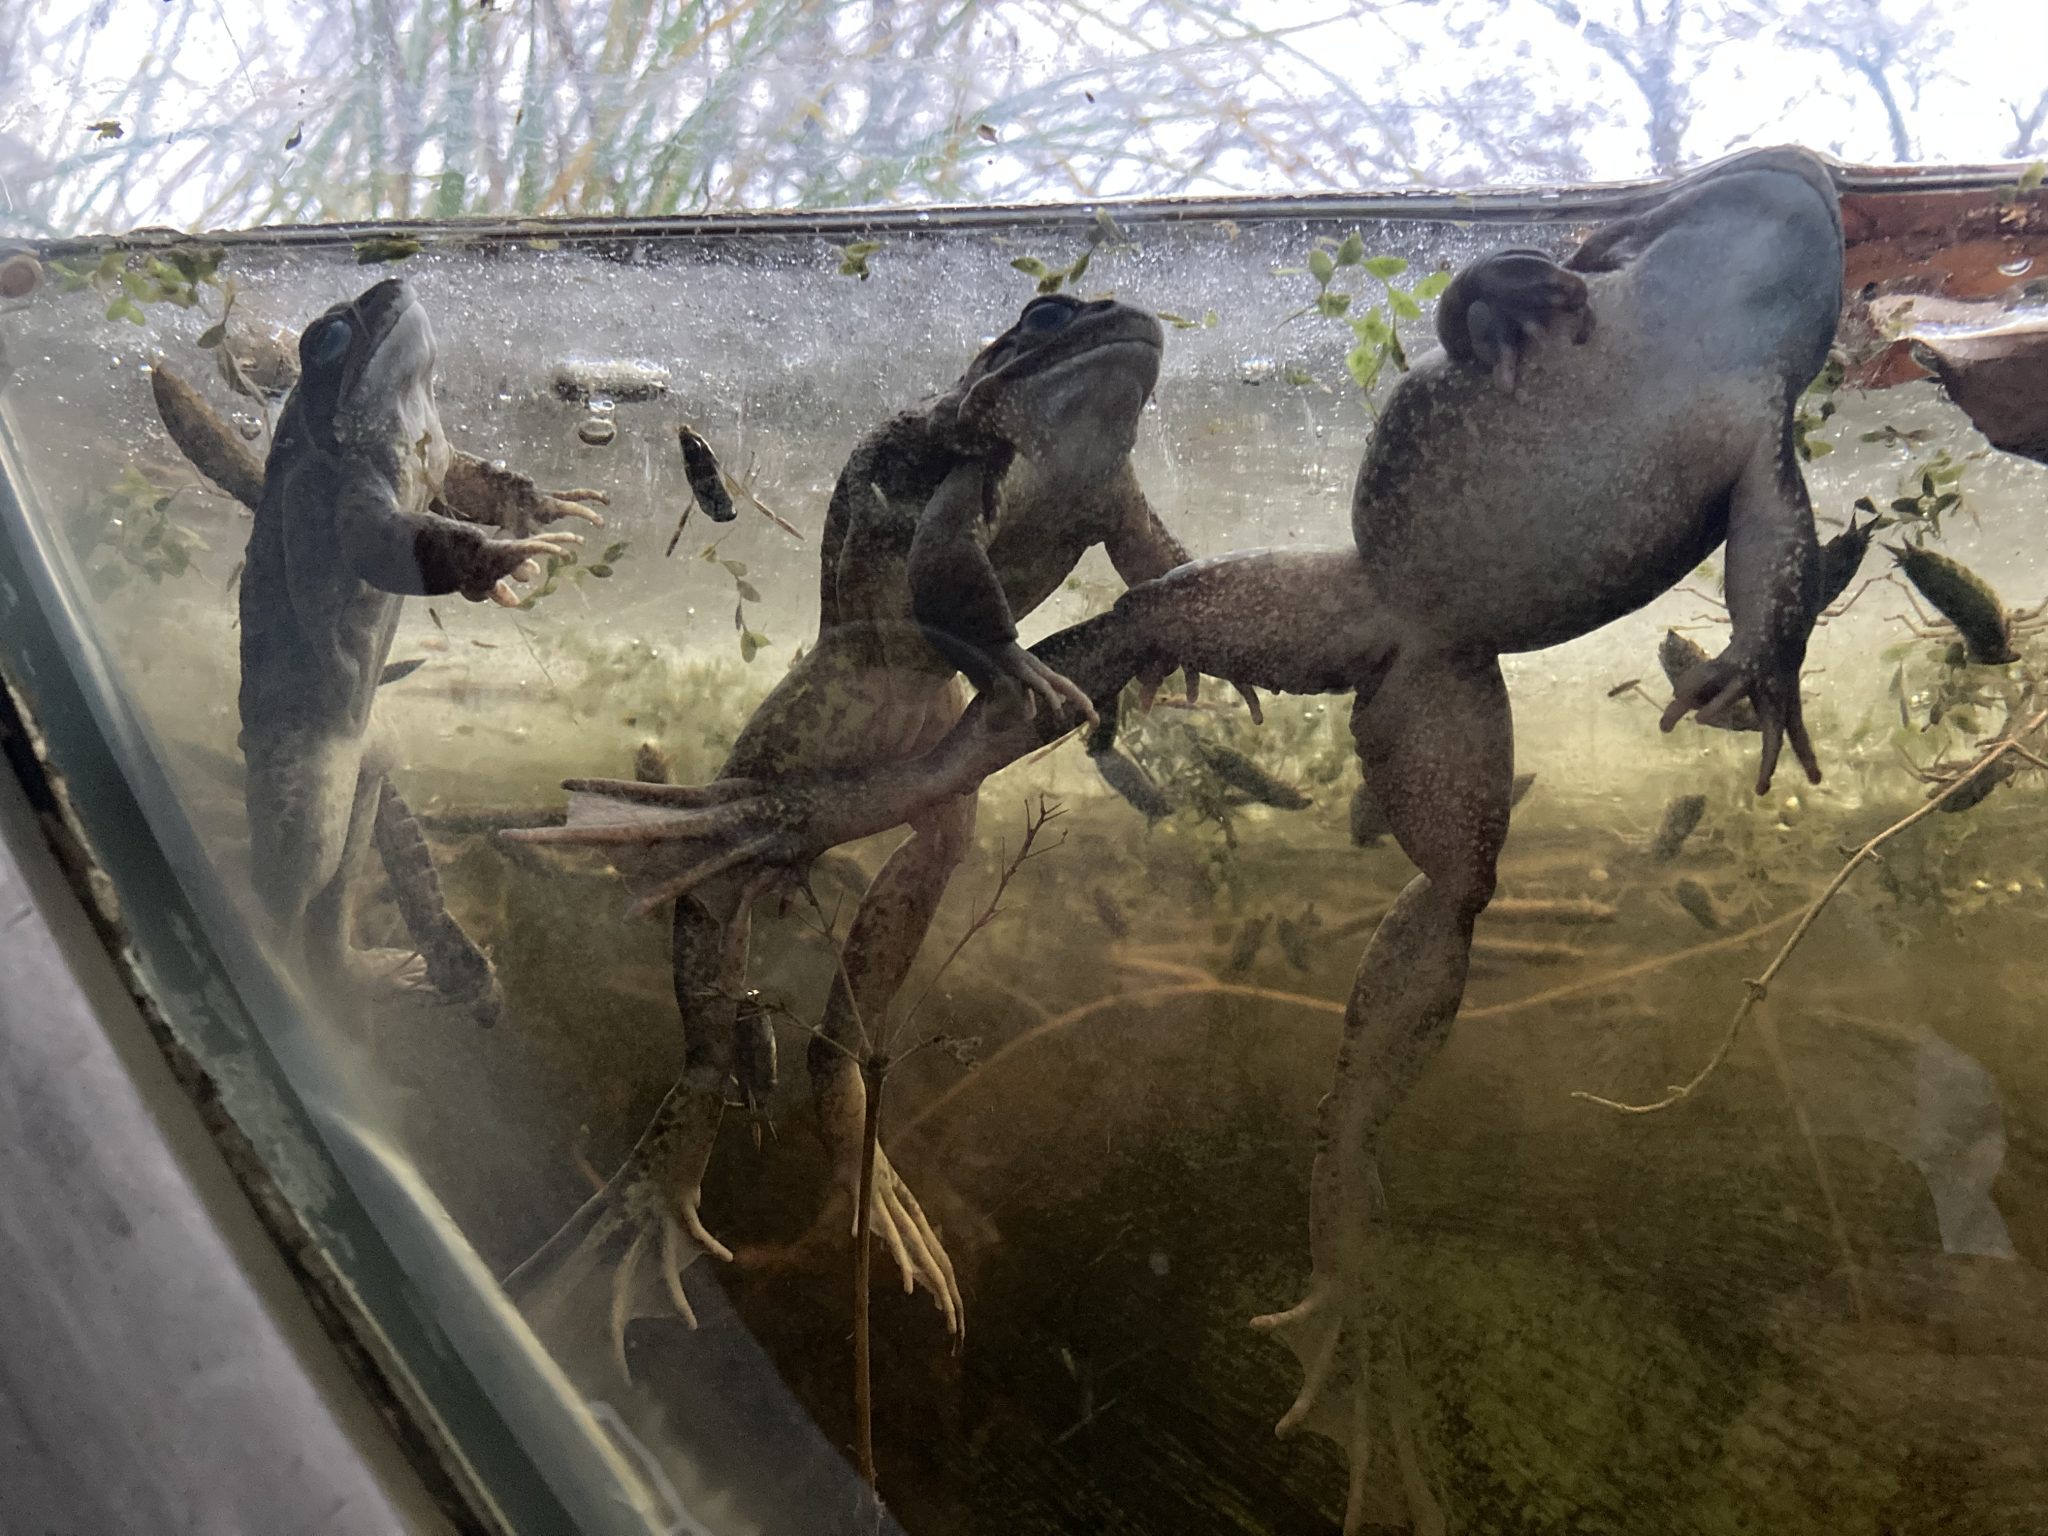 An der Scheibe des Bullaugenfensters kann man drei Erdkröten unter Wasser beobachten.